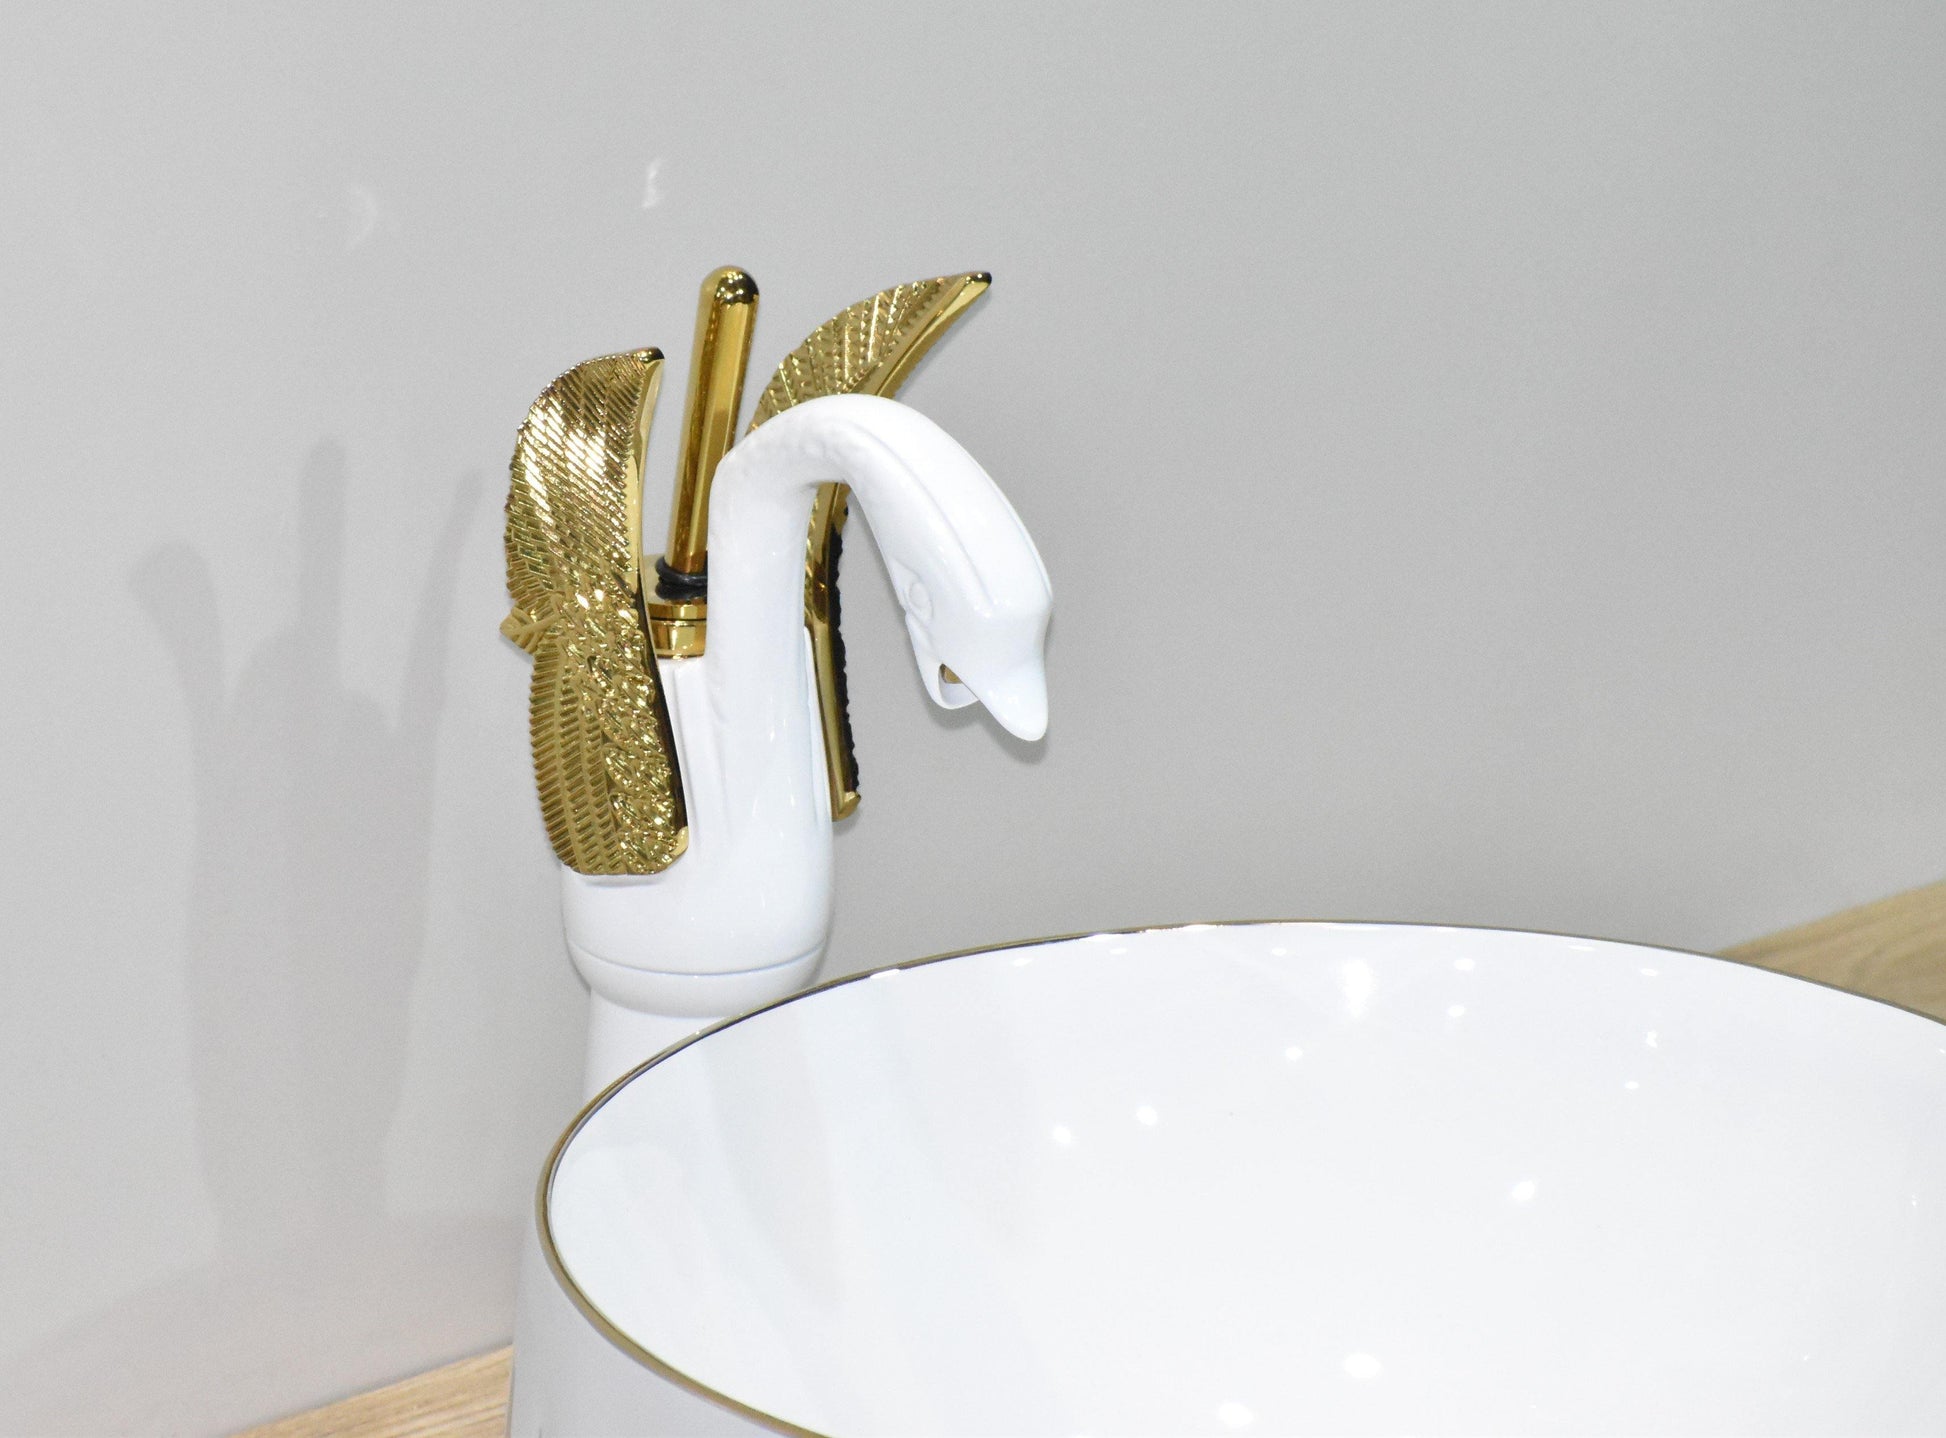 Designer Ceramic Wash Basin Vessel Sink Over or Above Counter Top Wash Basin for Bathroom Round Shape White Gold Color 36 x 36 x 14 cm Only Wash Basin - Bath Outlet